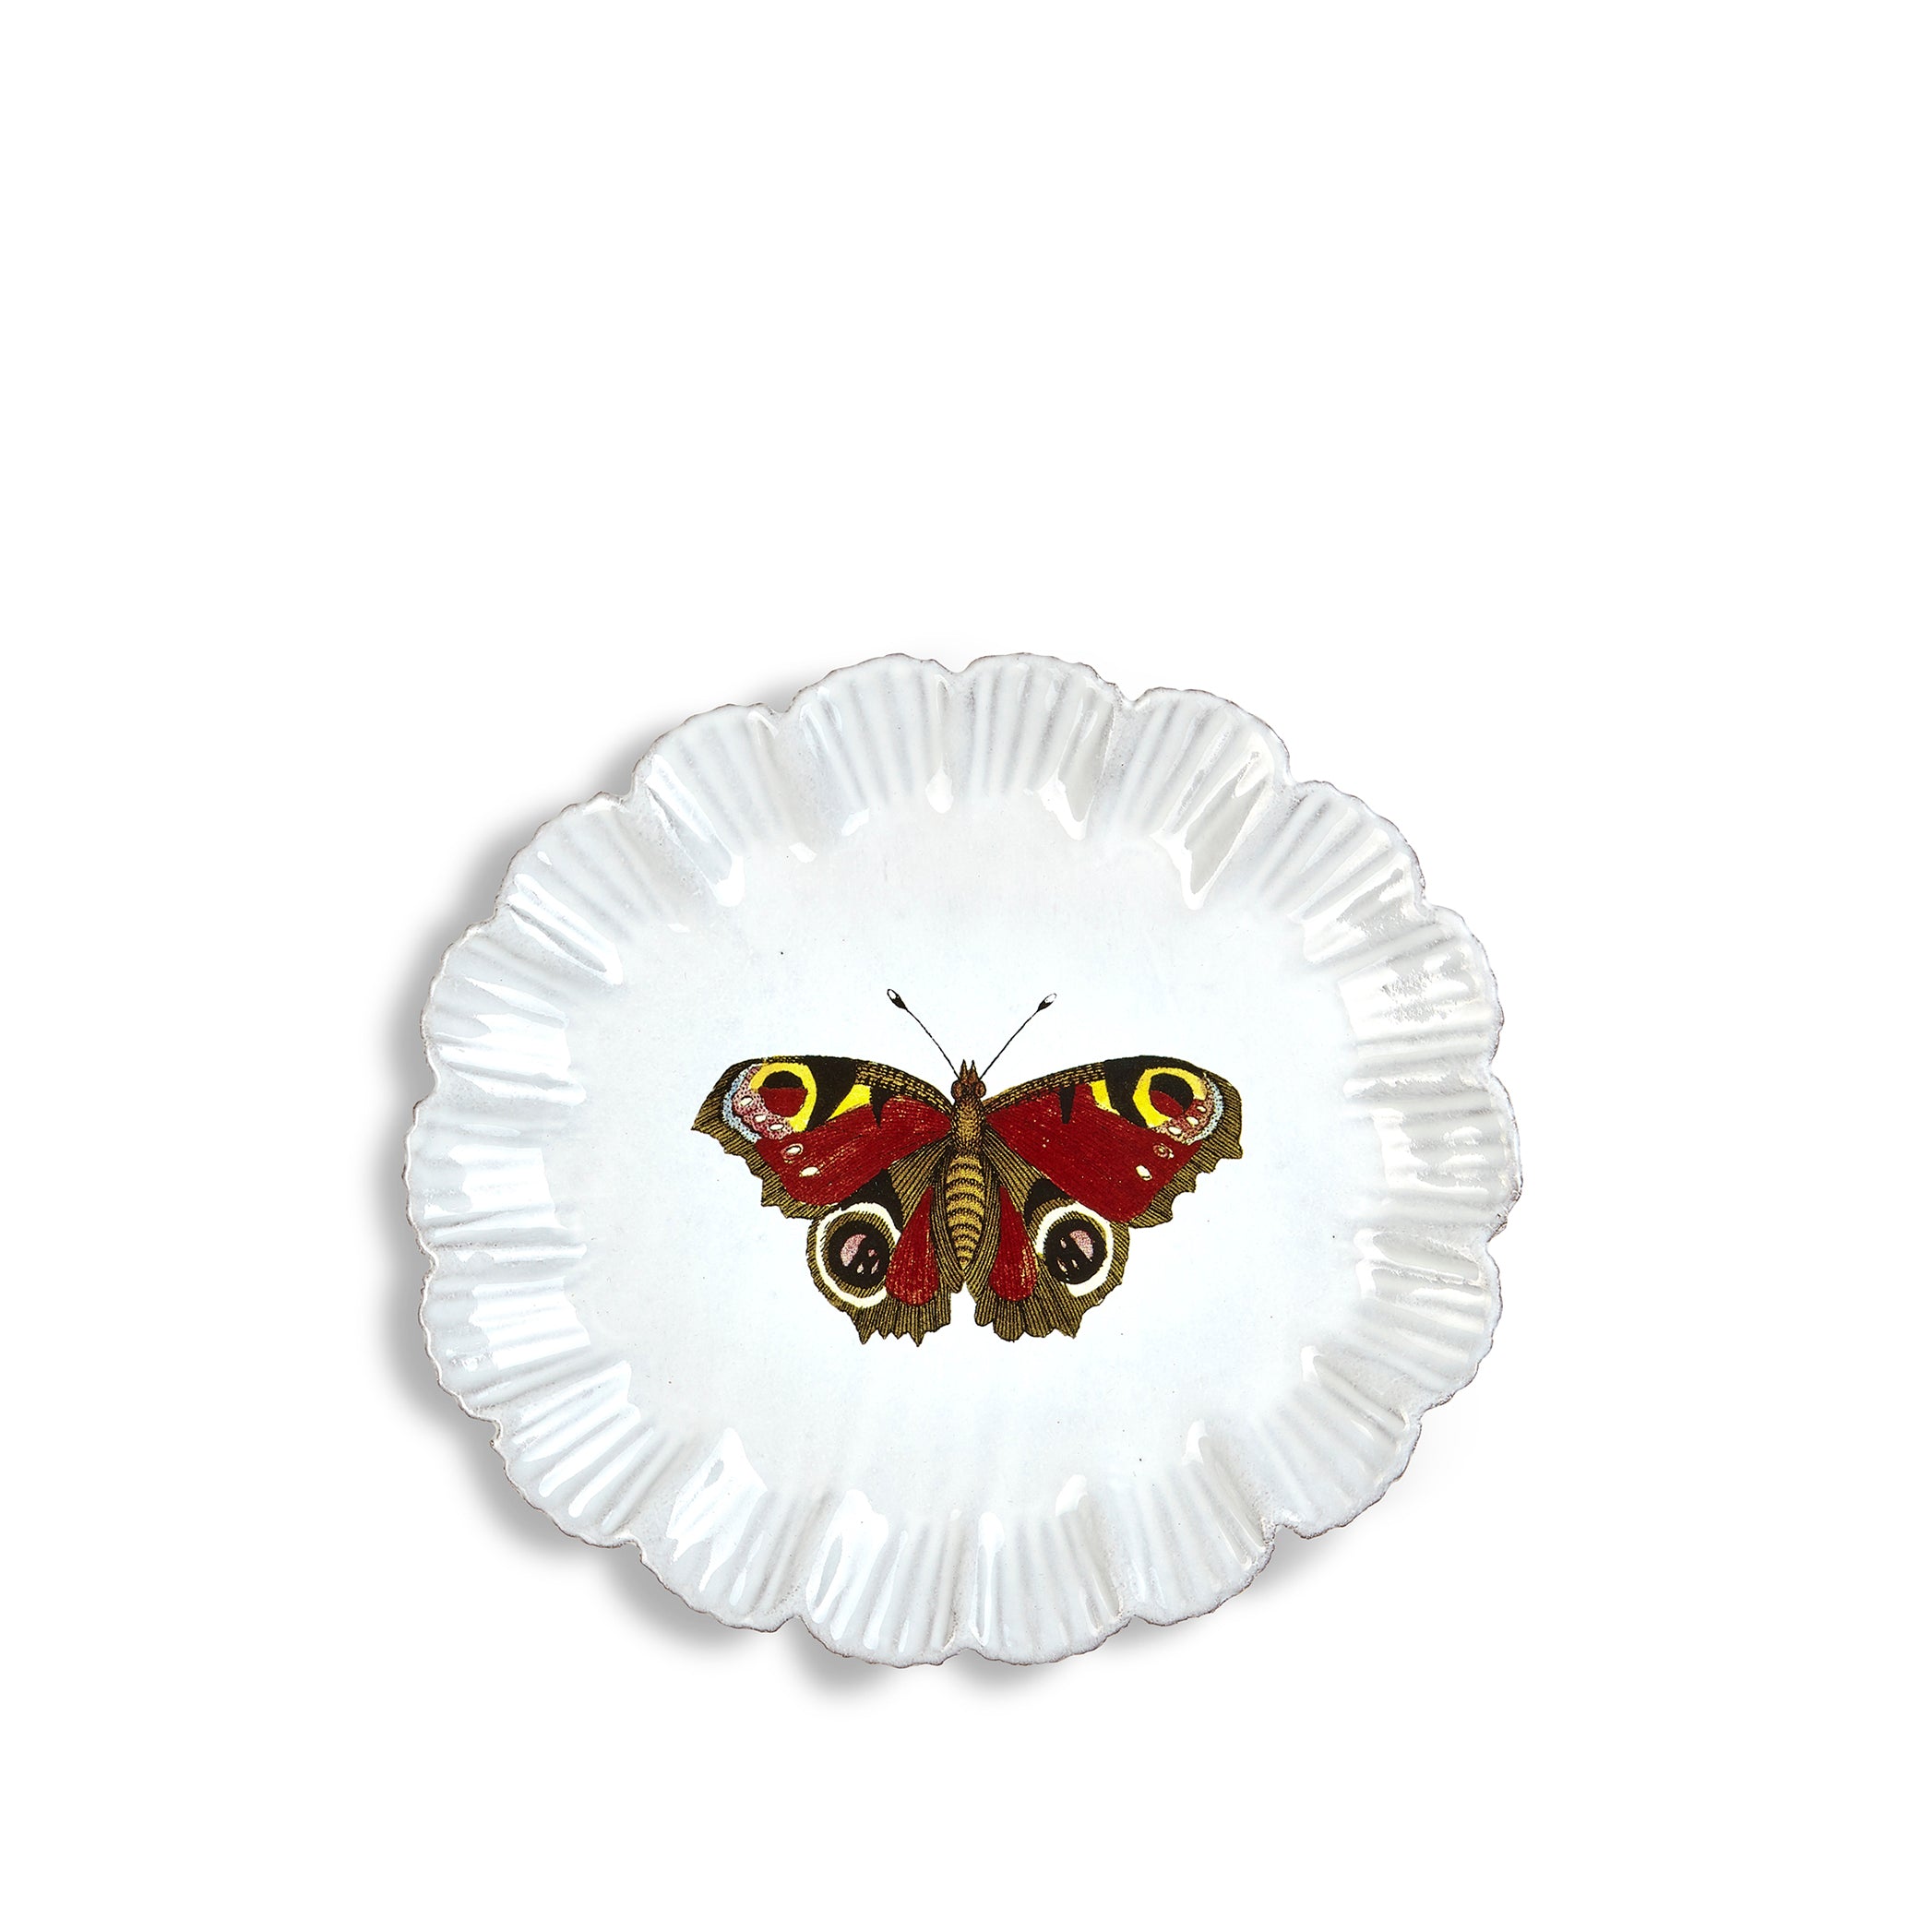 Burgundy Butterfly Dinner Plate by Astier de Villatte, 26.6cm